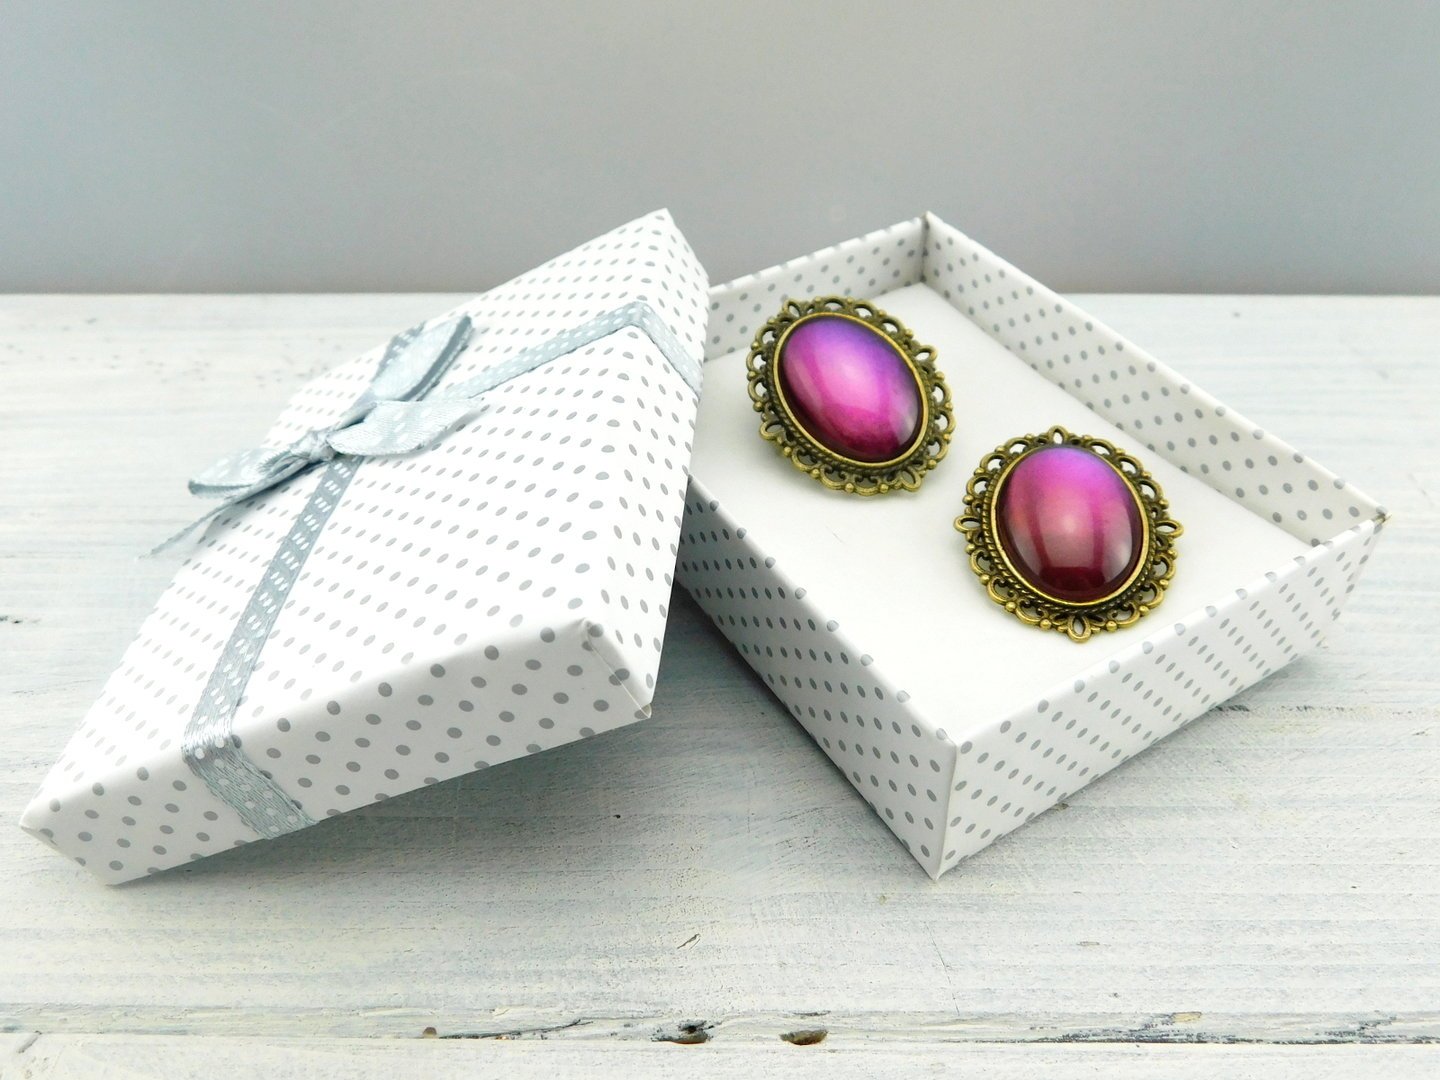 Geschenkset "Mystisches Violett" mit Ring und Brosche - Vintage Schmuckstübchen